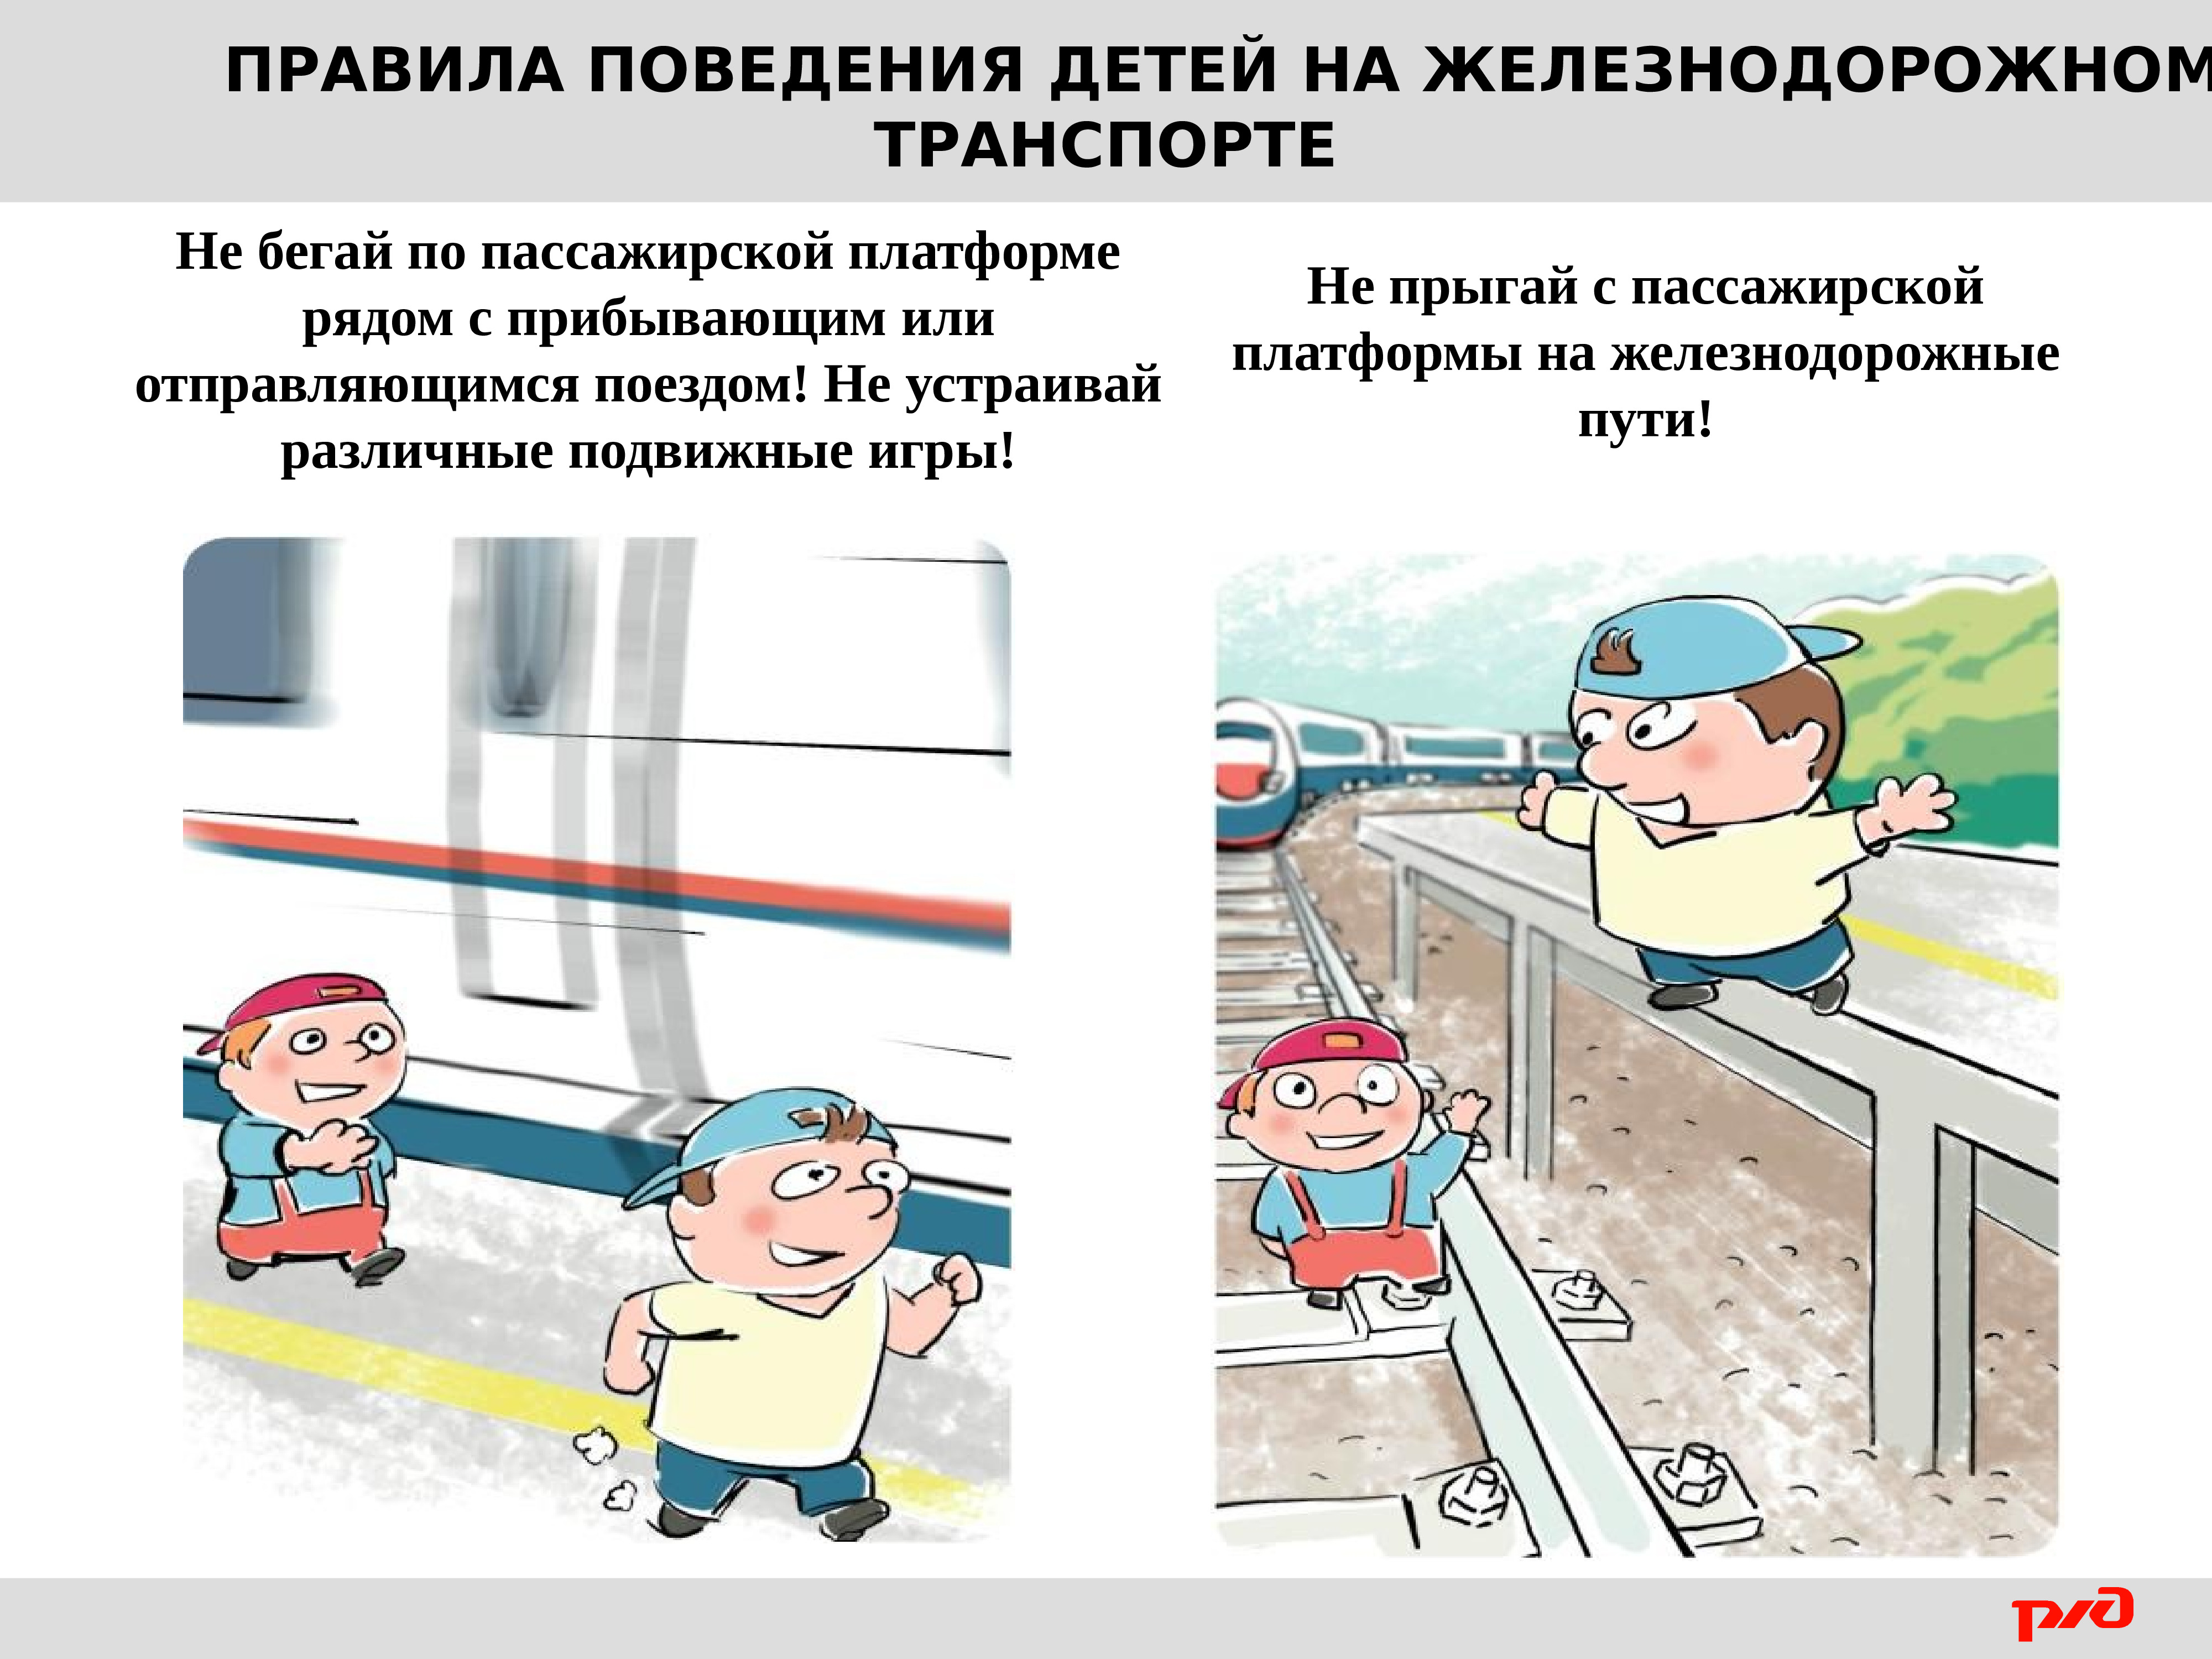 Правила безопасности поведения детей на железной дороге